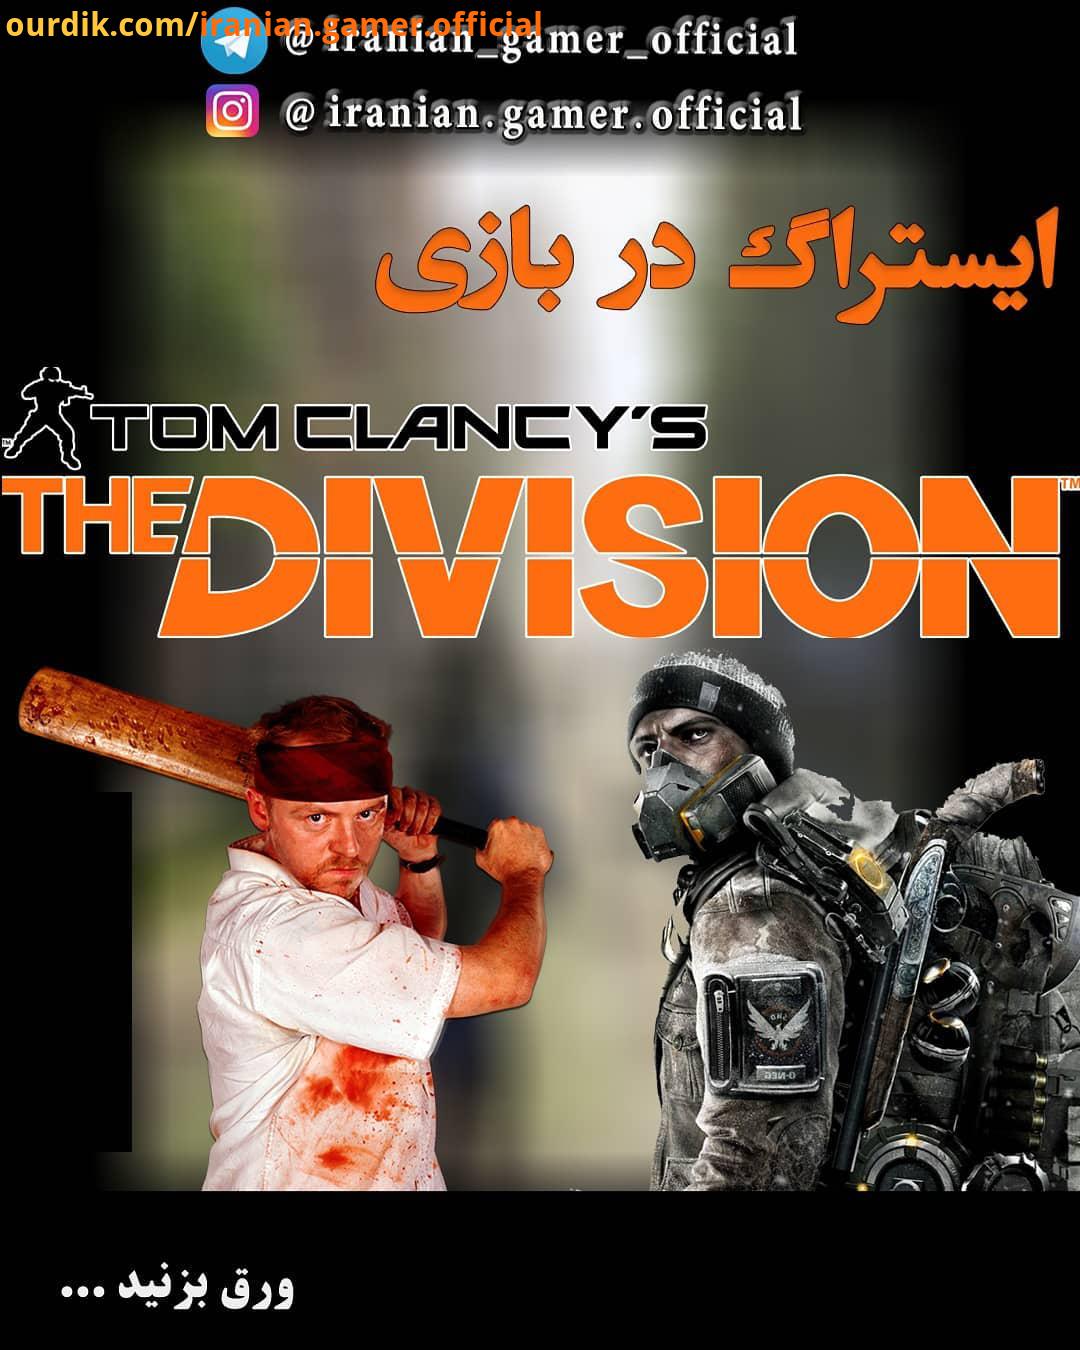 ایستراگ رفرنس در بازی The Division بازی Tom Clancy The Division یک بازی ویدیویی آنلاین در سبک تی